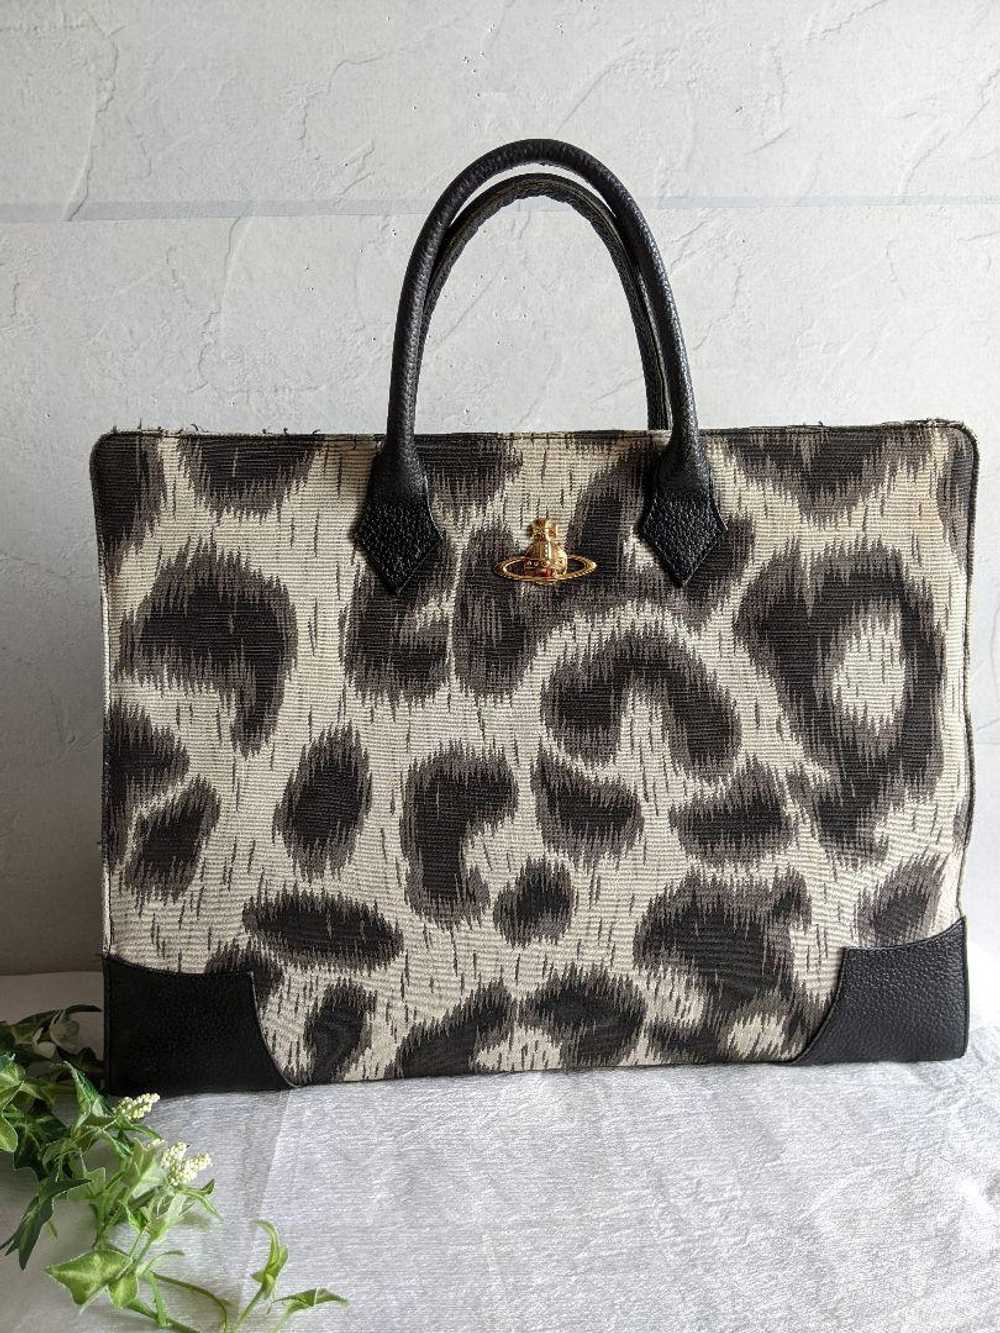 Vivienne Westwood Tote Bag Leopard Print Orb 2Way - image 1